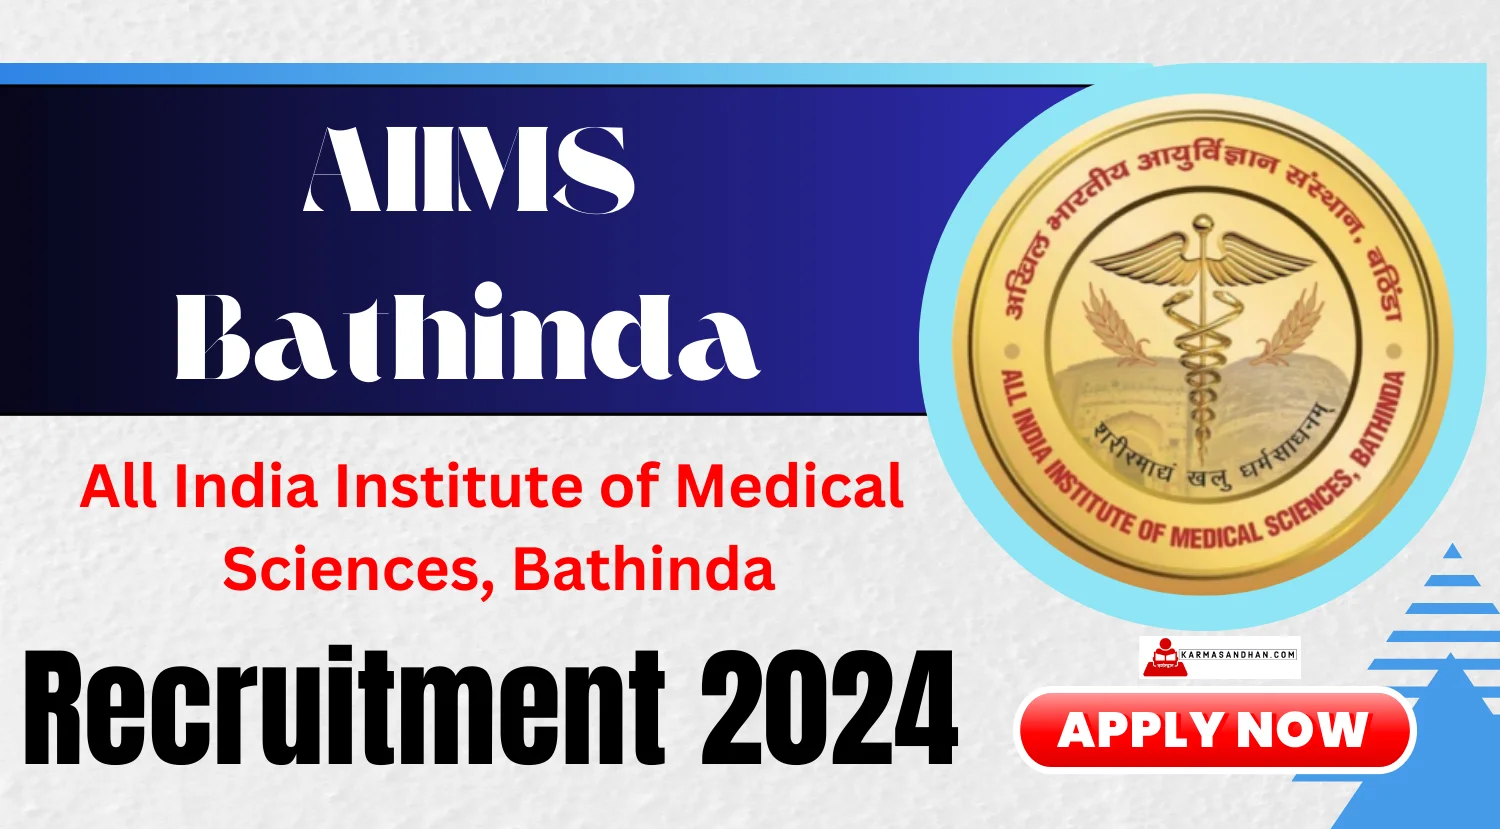 AIIMS Bathinda Recruitment 2024